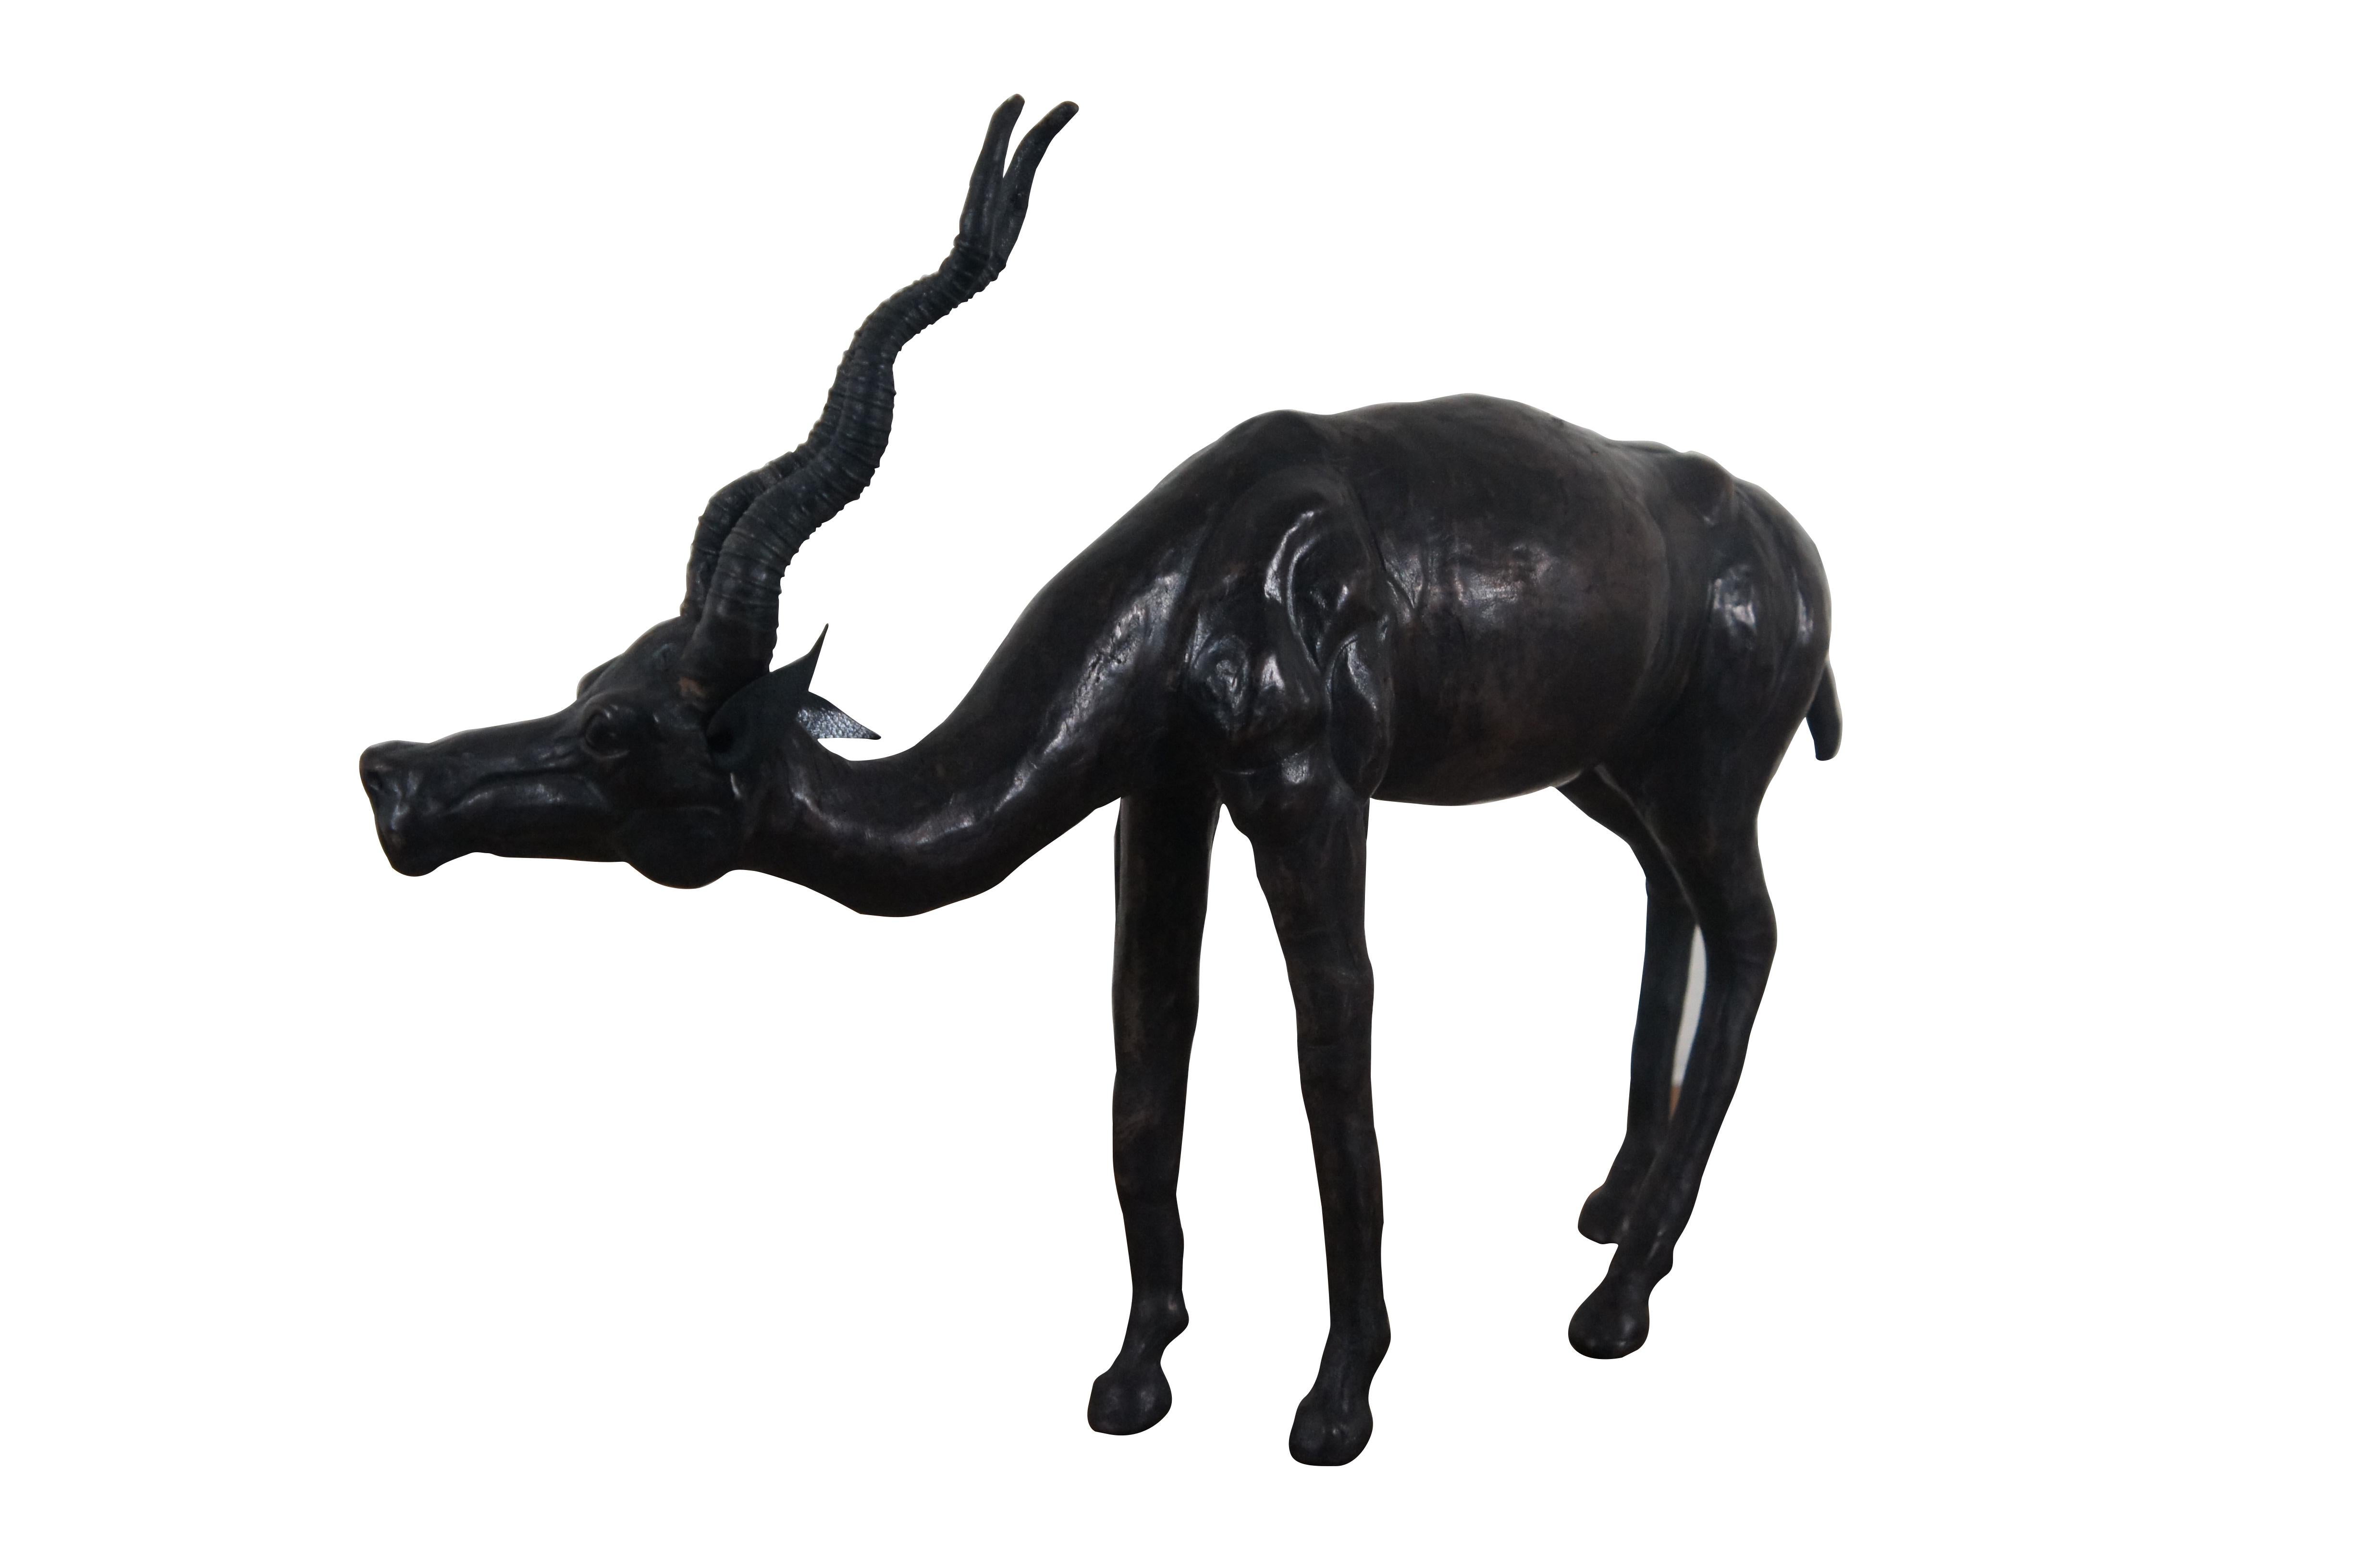 Exceptionnelle sculpture / figurine animale en cuir du milieu du 20e siècle en forme d'antilope africaine / Gazelle avec des cornes en spirale.

Dimensions :
14.75